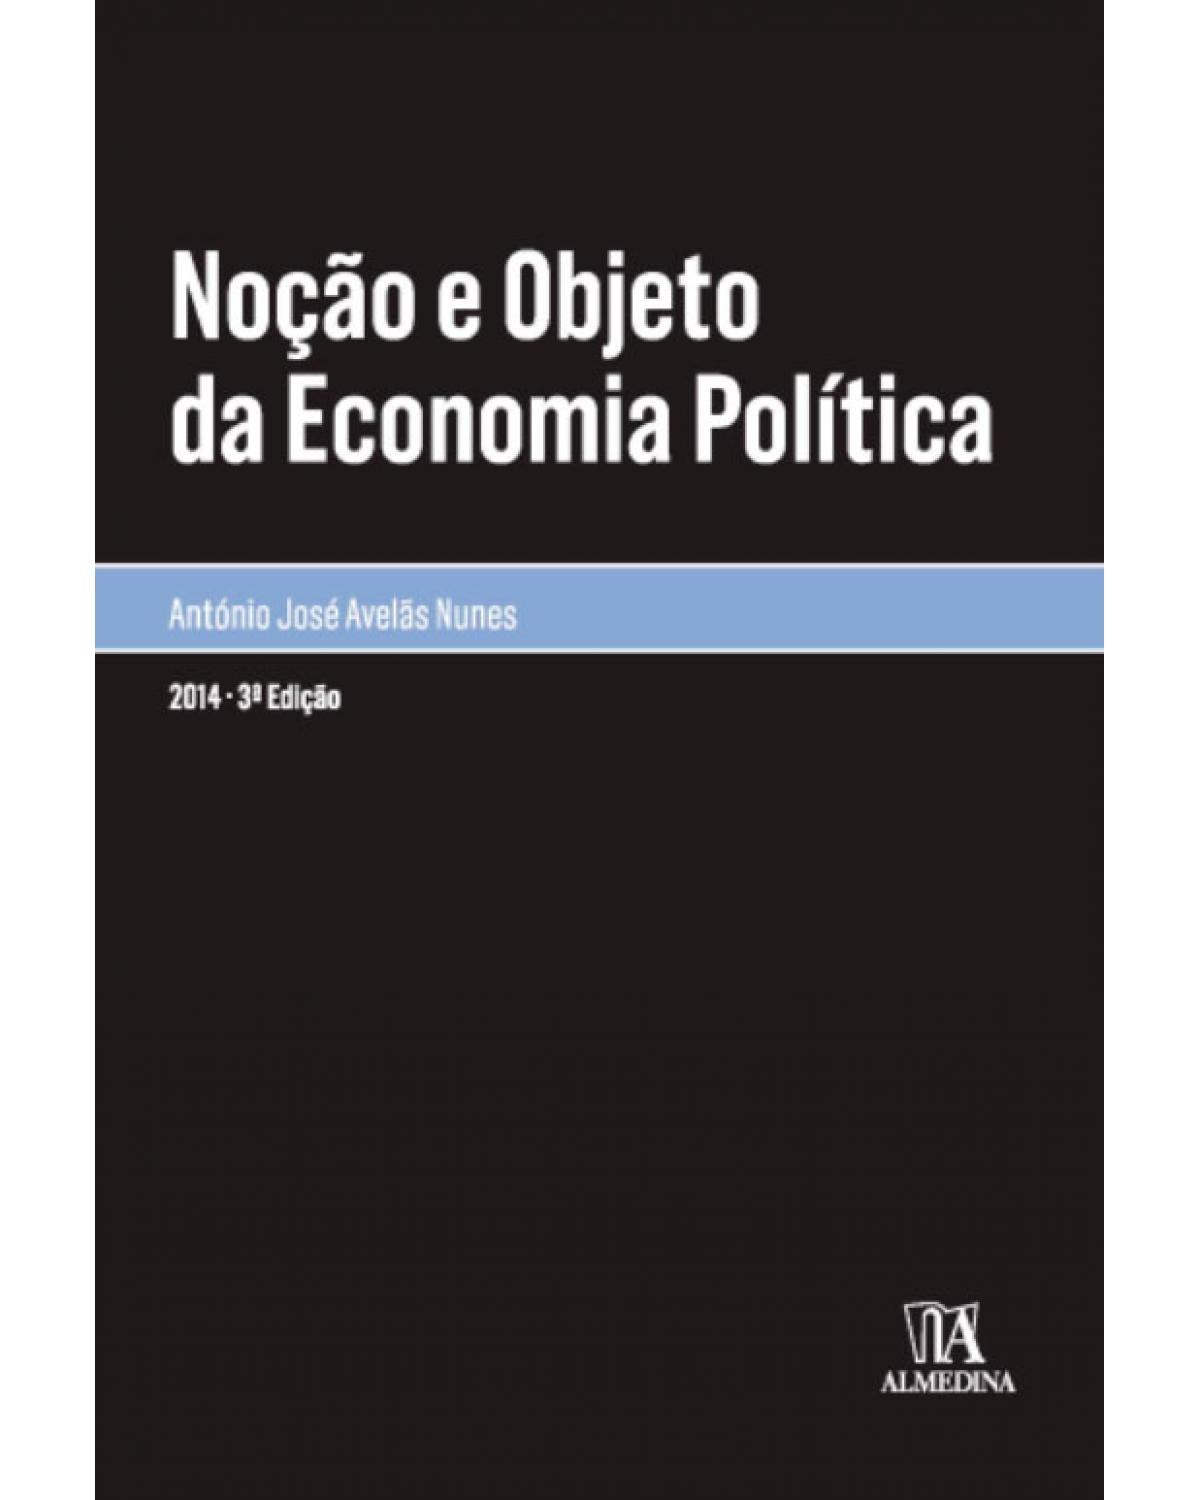 Noção e objecto da economia política - 3ª Edição | 2014